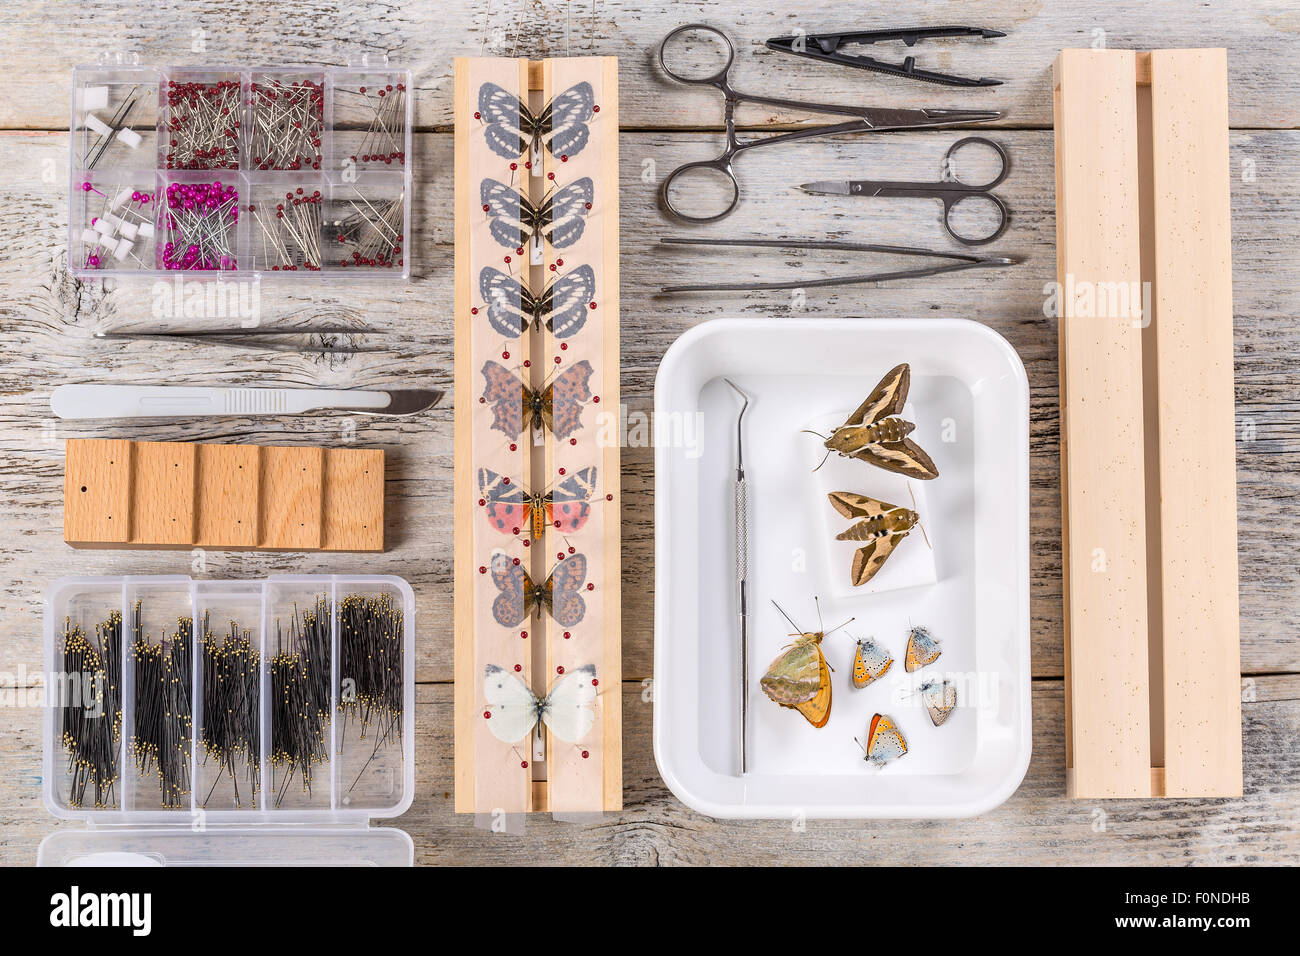 Le farfalle e gli strumenti utilizzati per preservare Foto Stock